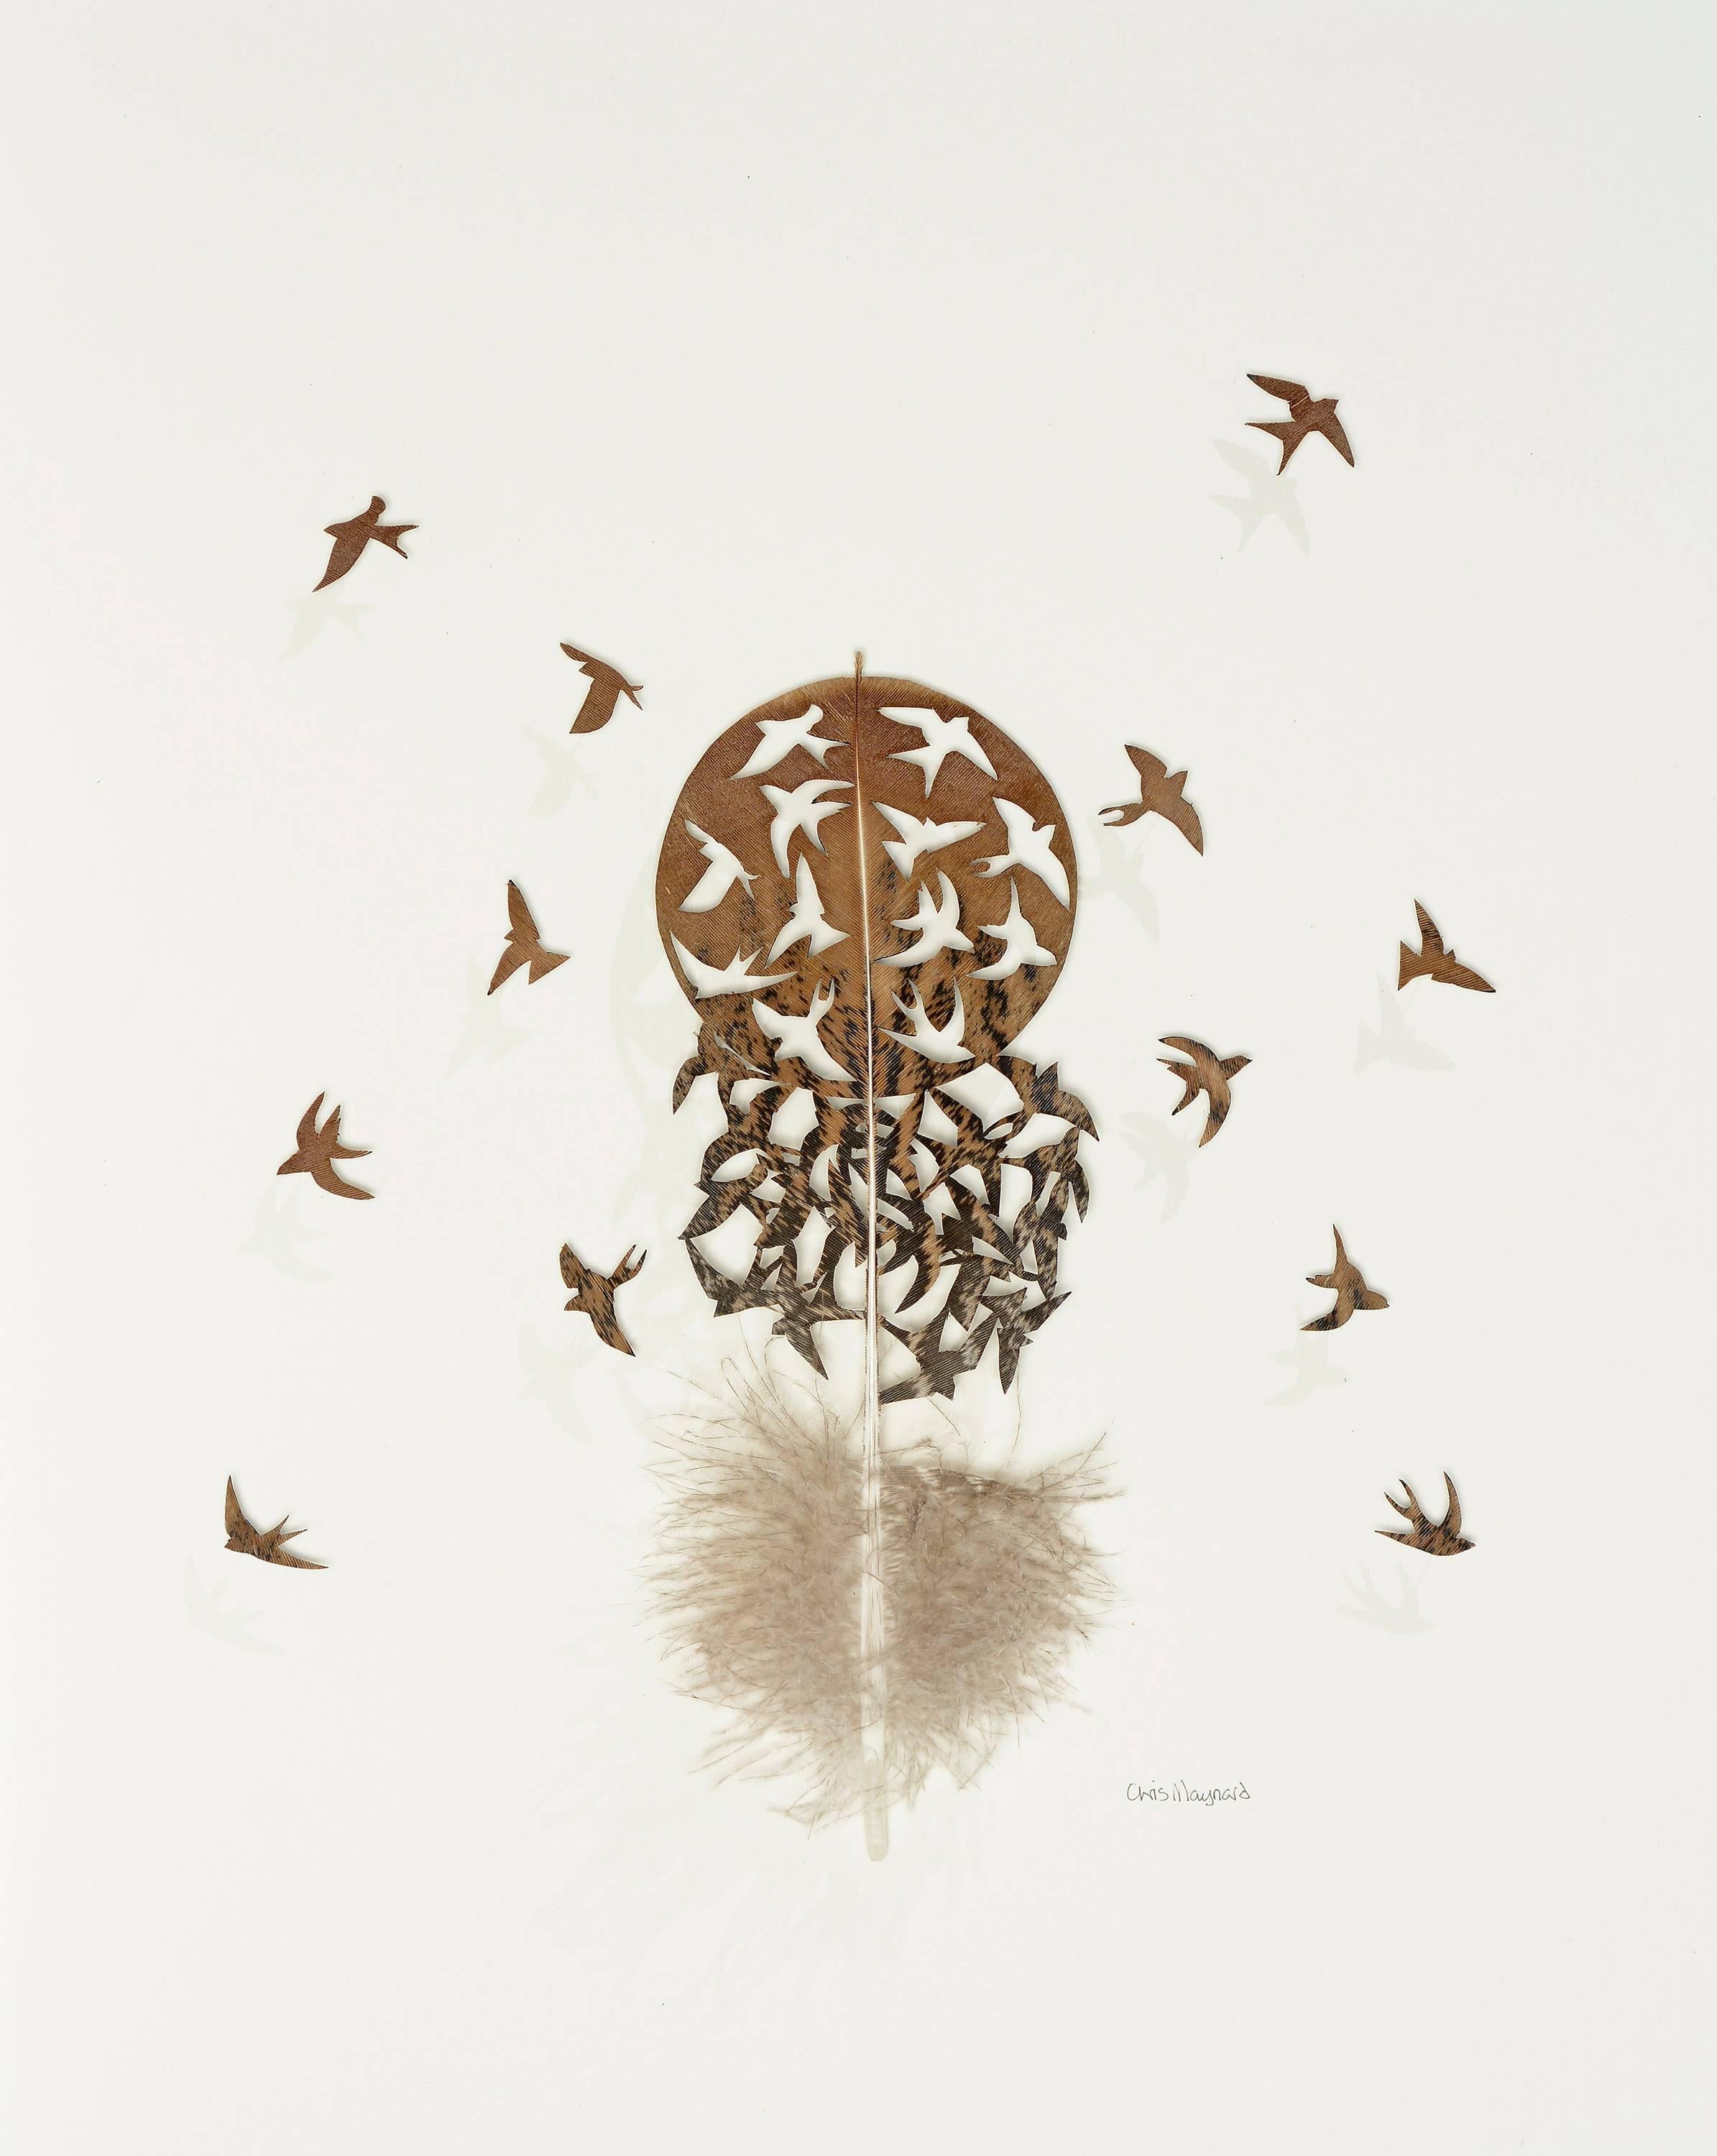 Chris Maynard Animal Art - Diaspora - brown bird feather 3D wall sculpture composition on paper 